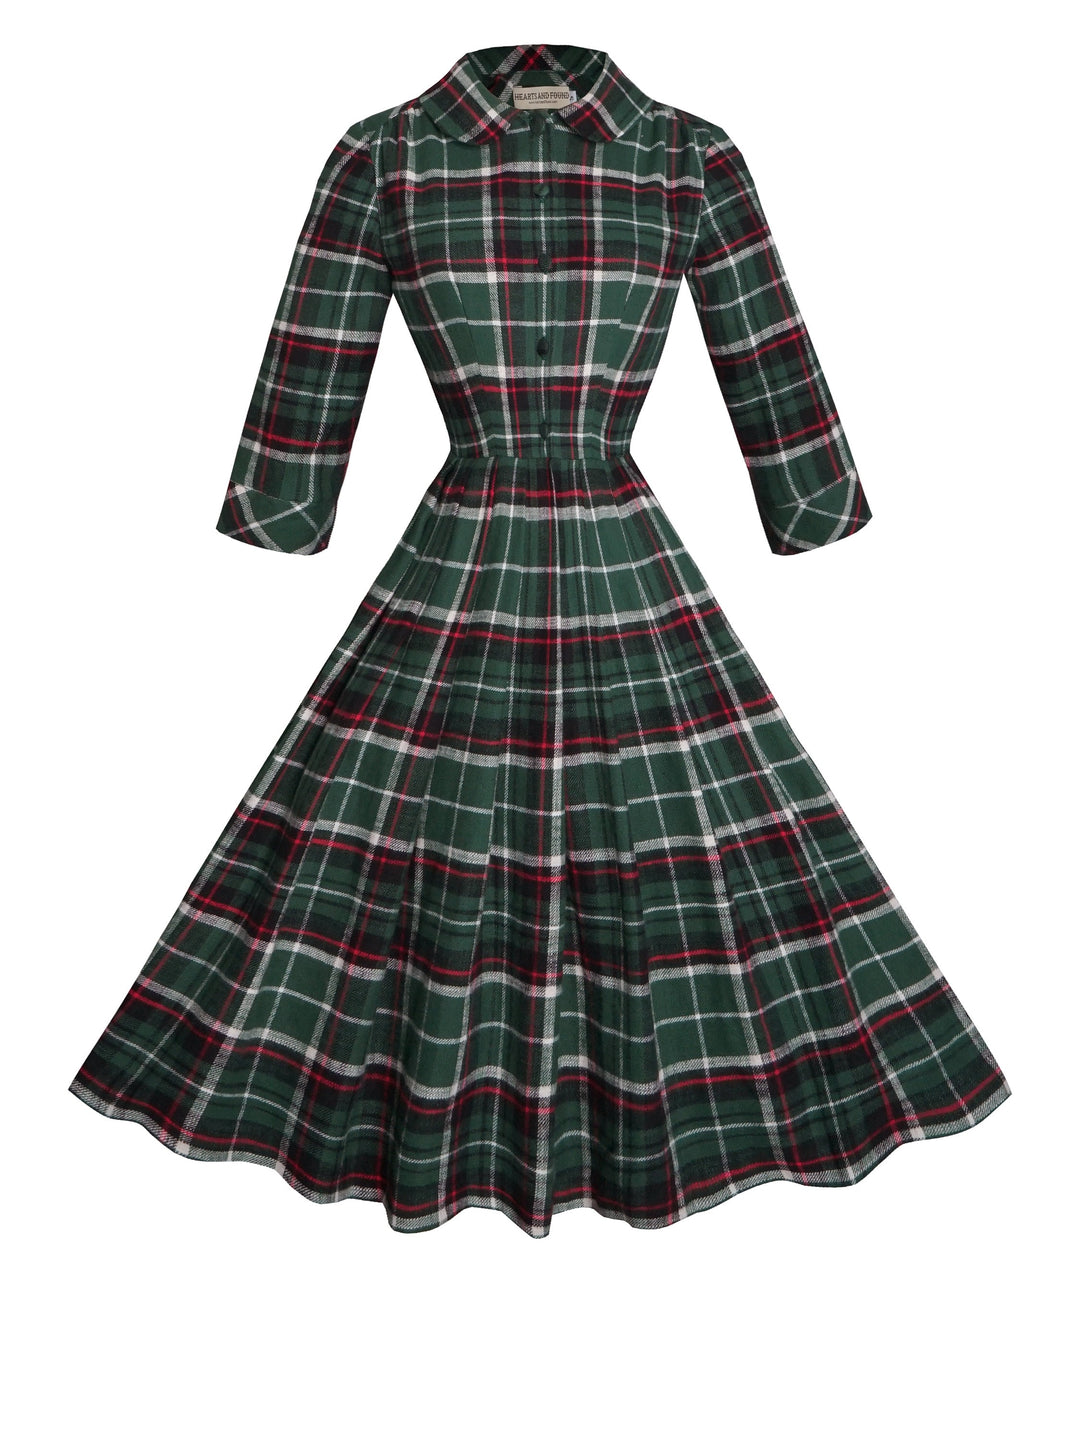 RTS - Size S - Wendy Dress "Norwich Plaid"